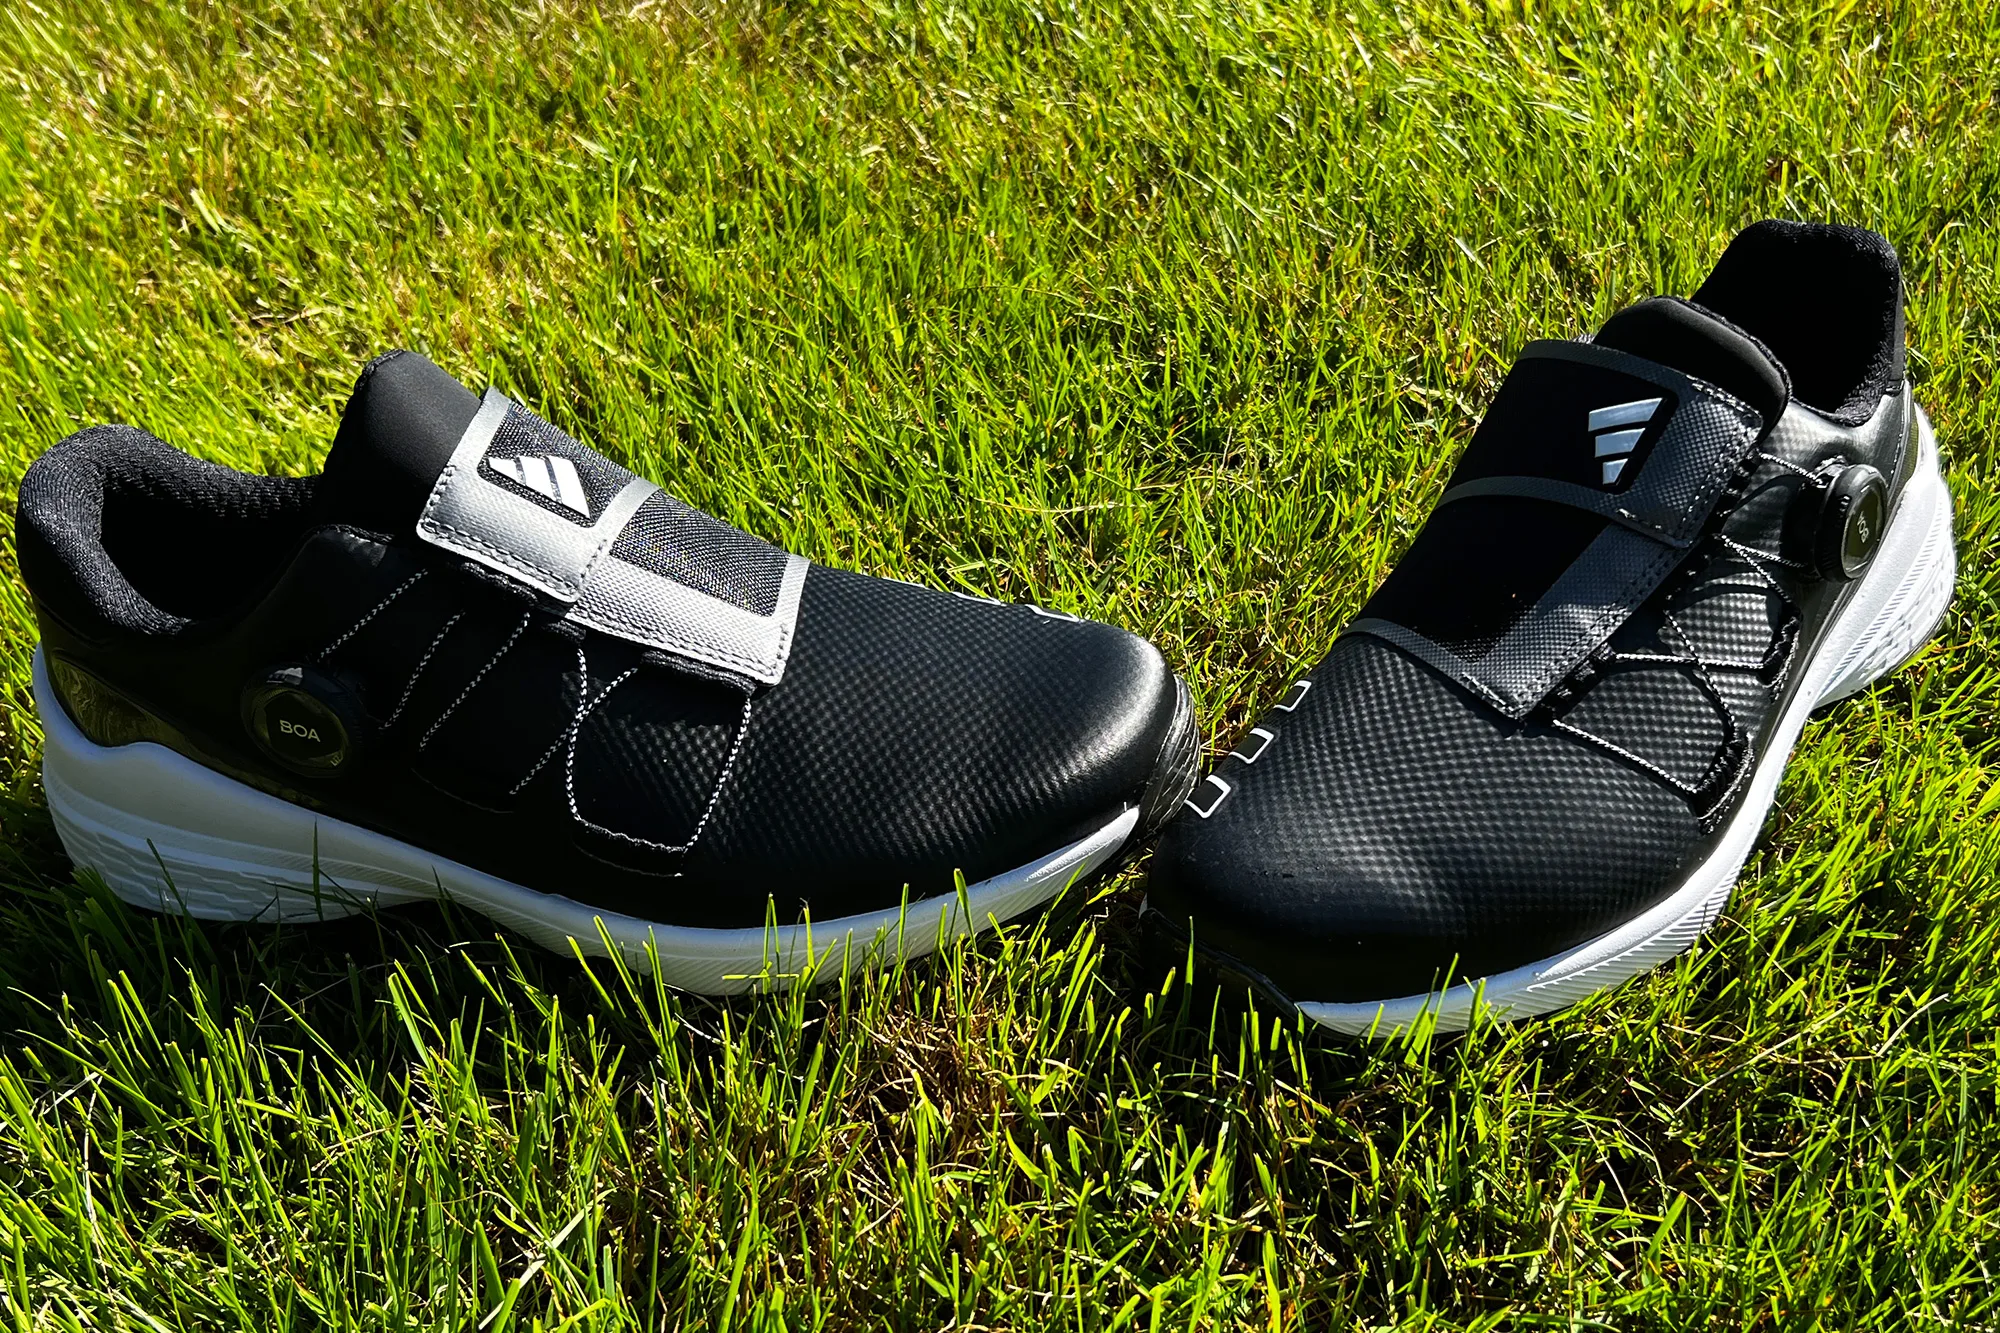 Adidas ZG23 BOA Golf Shoe Review